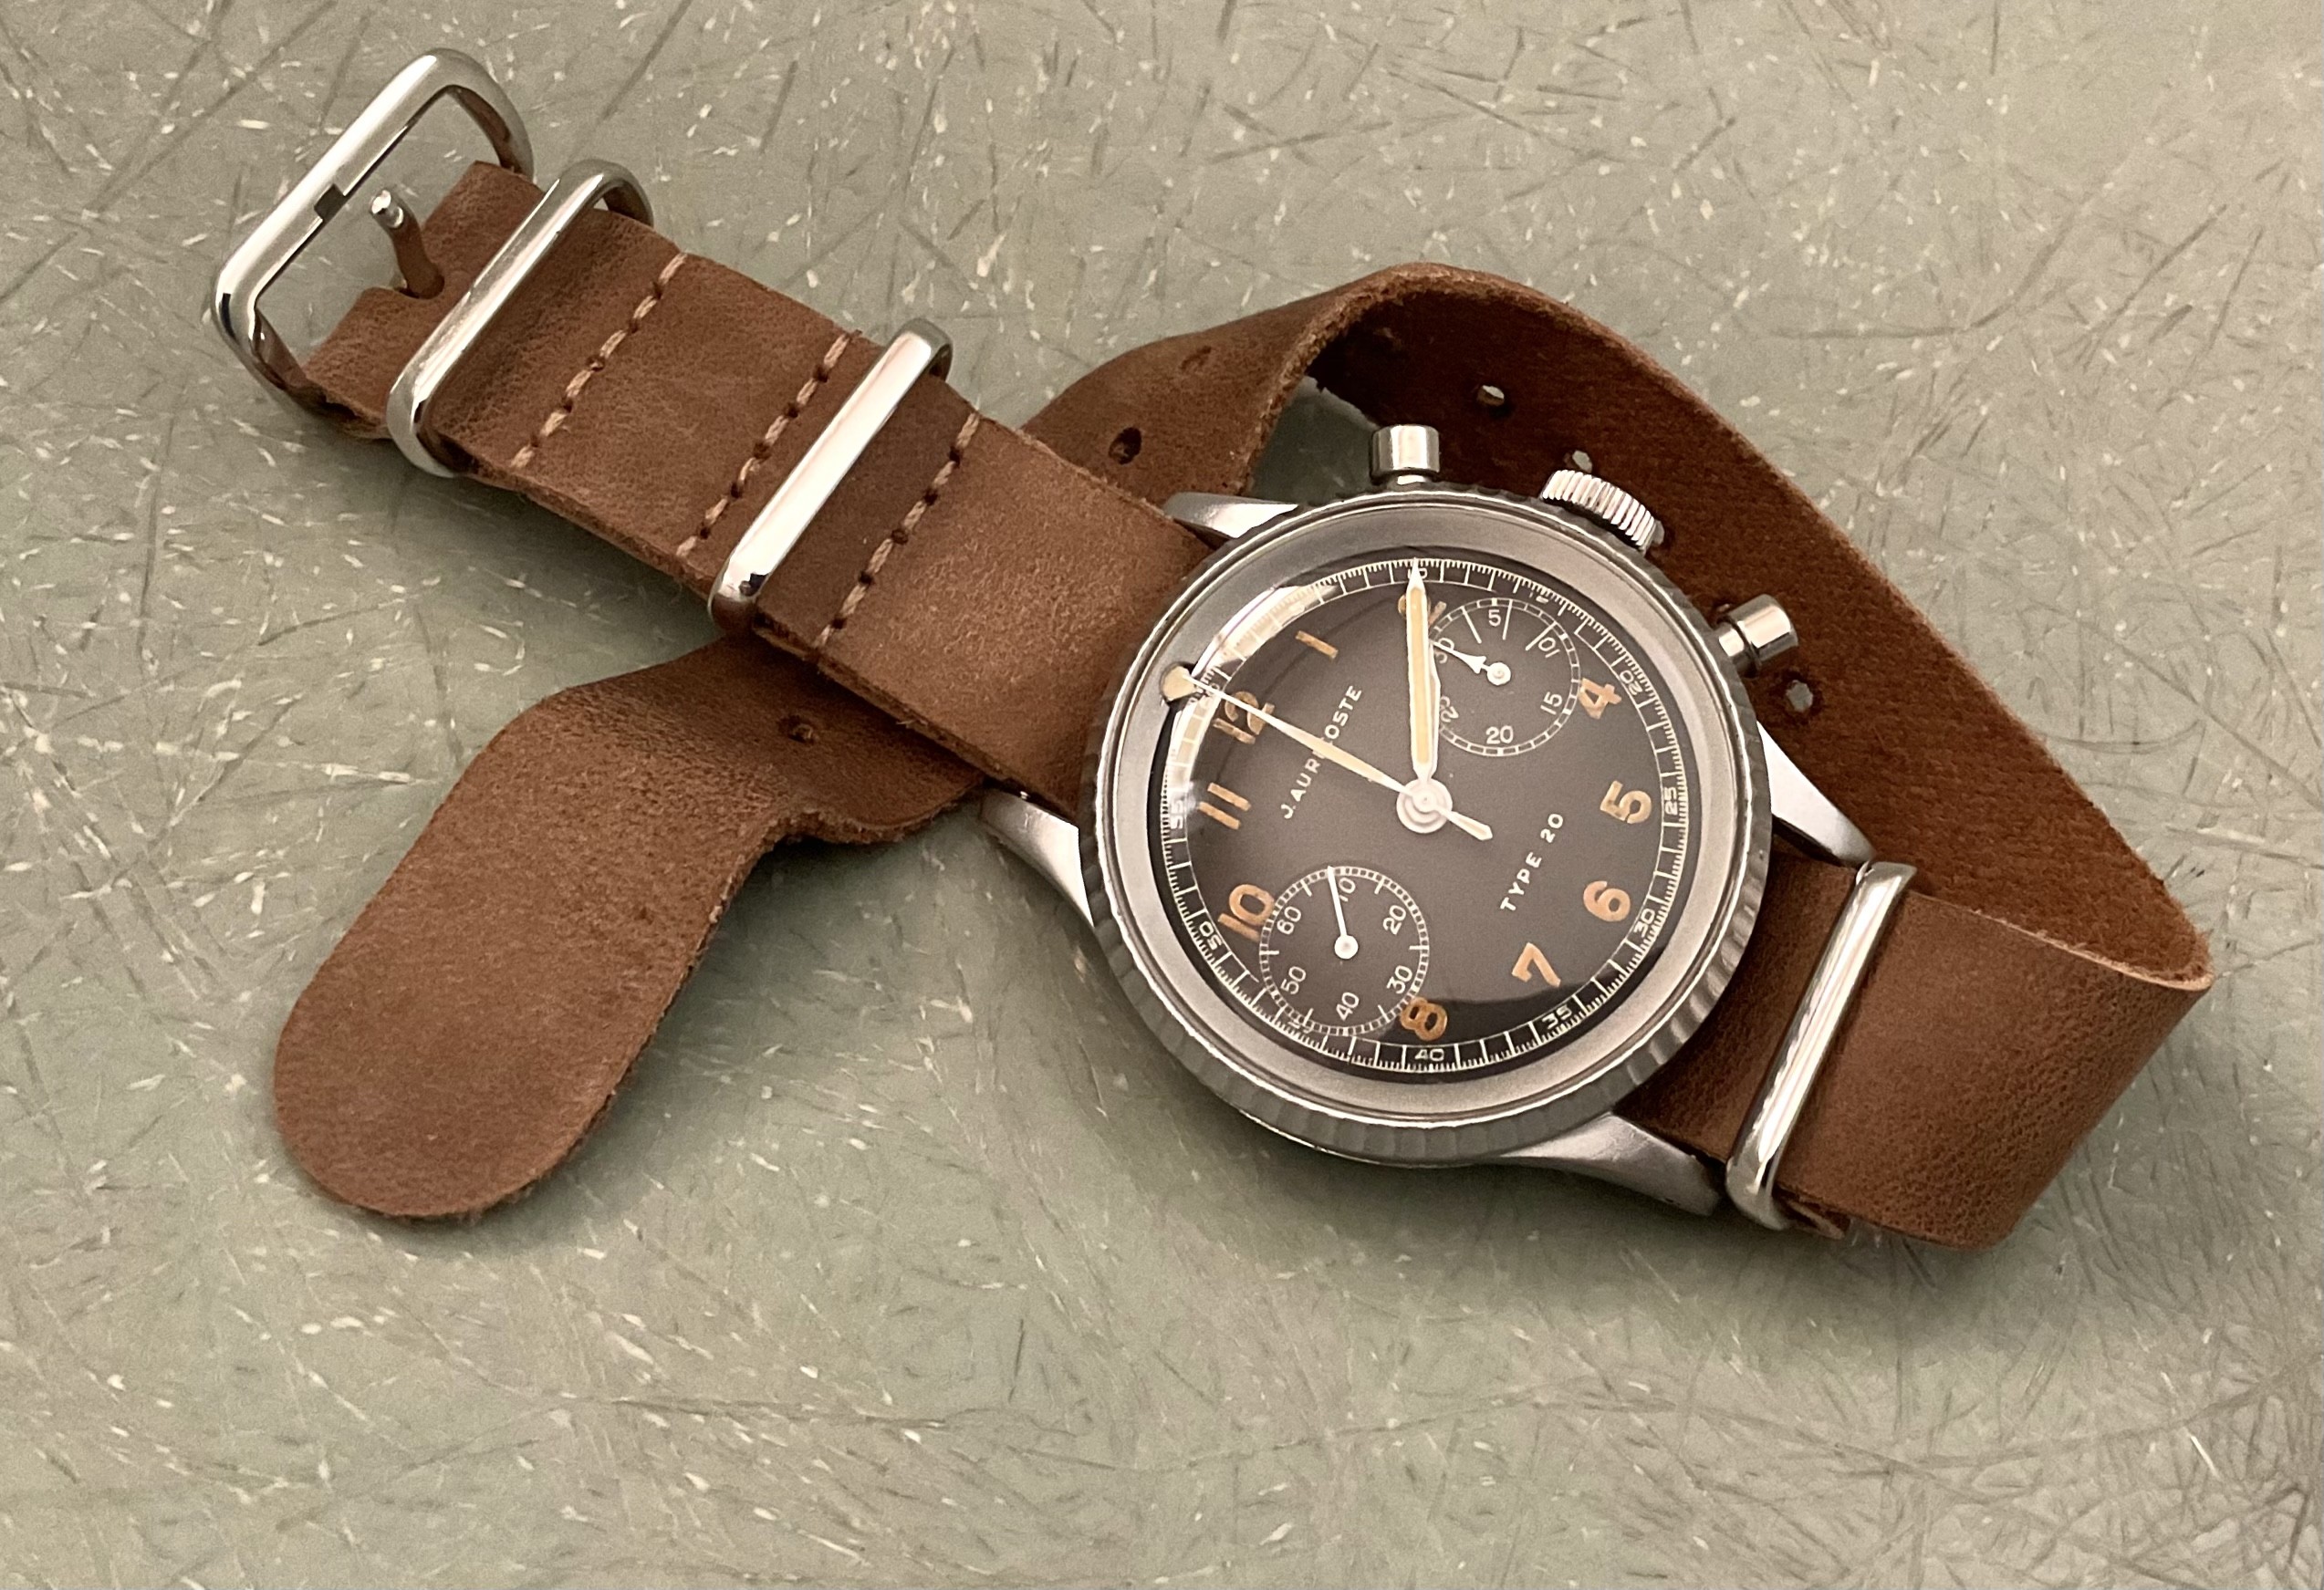 Feu de vos montres d'aviateur, ou inspirées du monde aéronautique - Page 9 BA748075-226D-49F3-816E-F5A8C344A91C